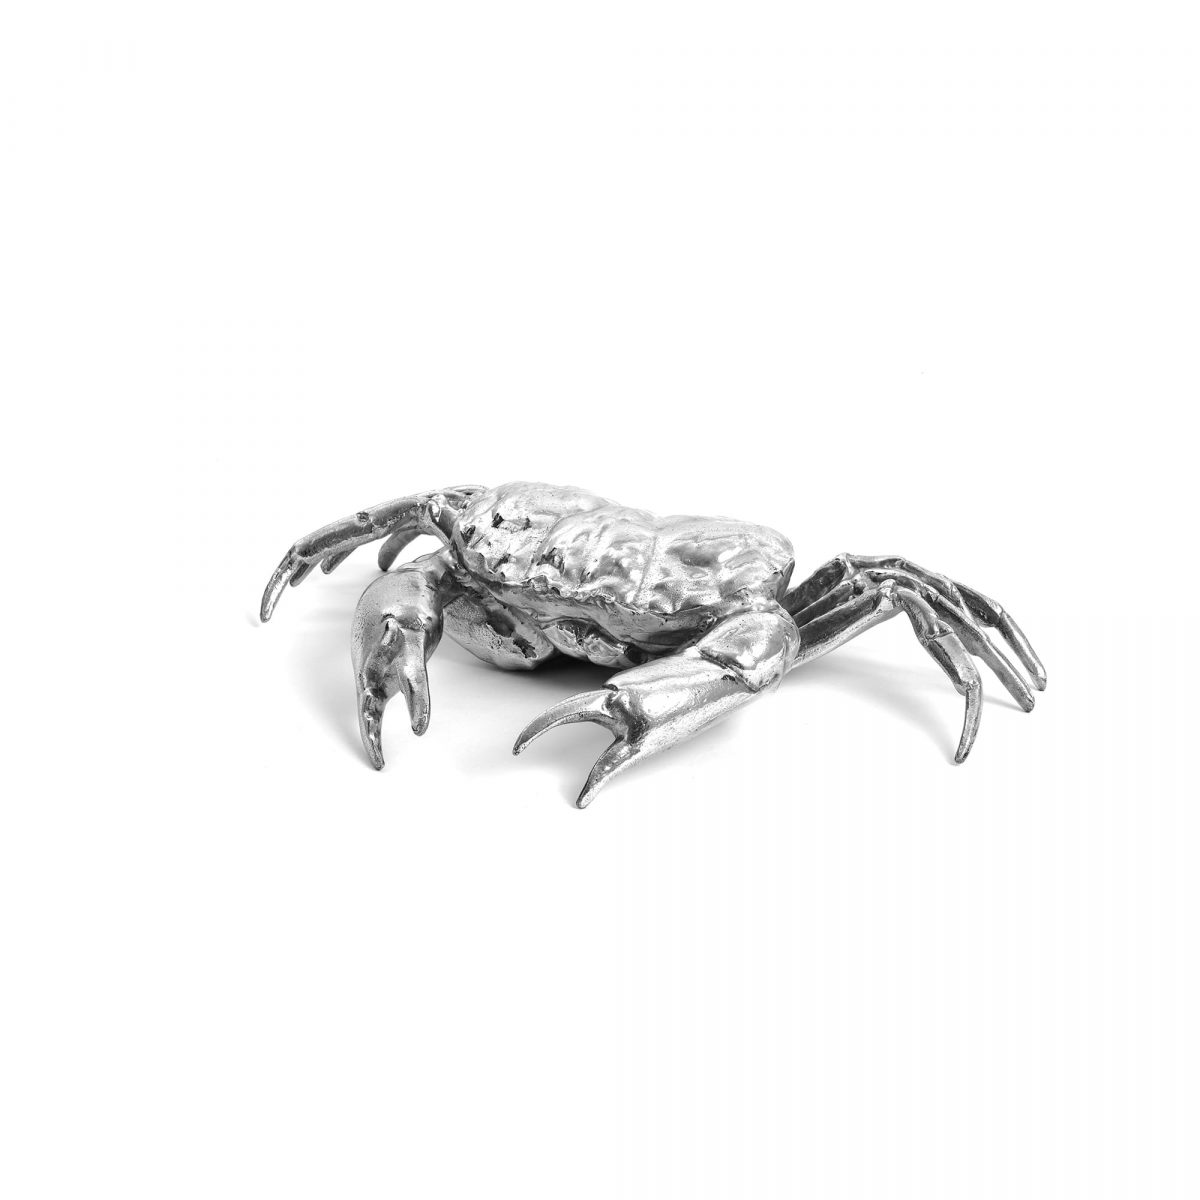 SELETTI DIESEL Wunderkrammer Crabe